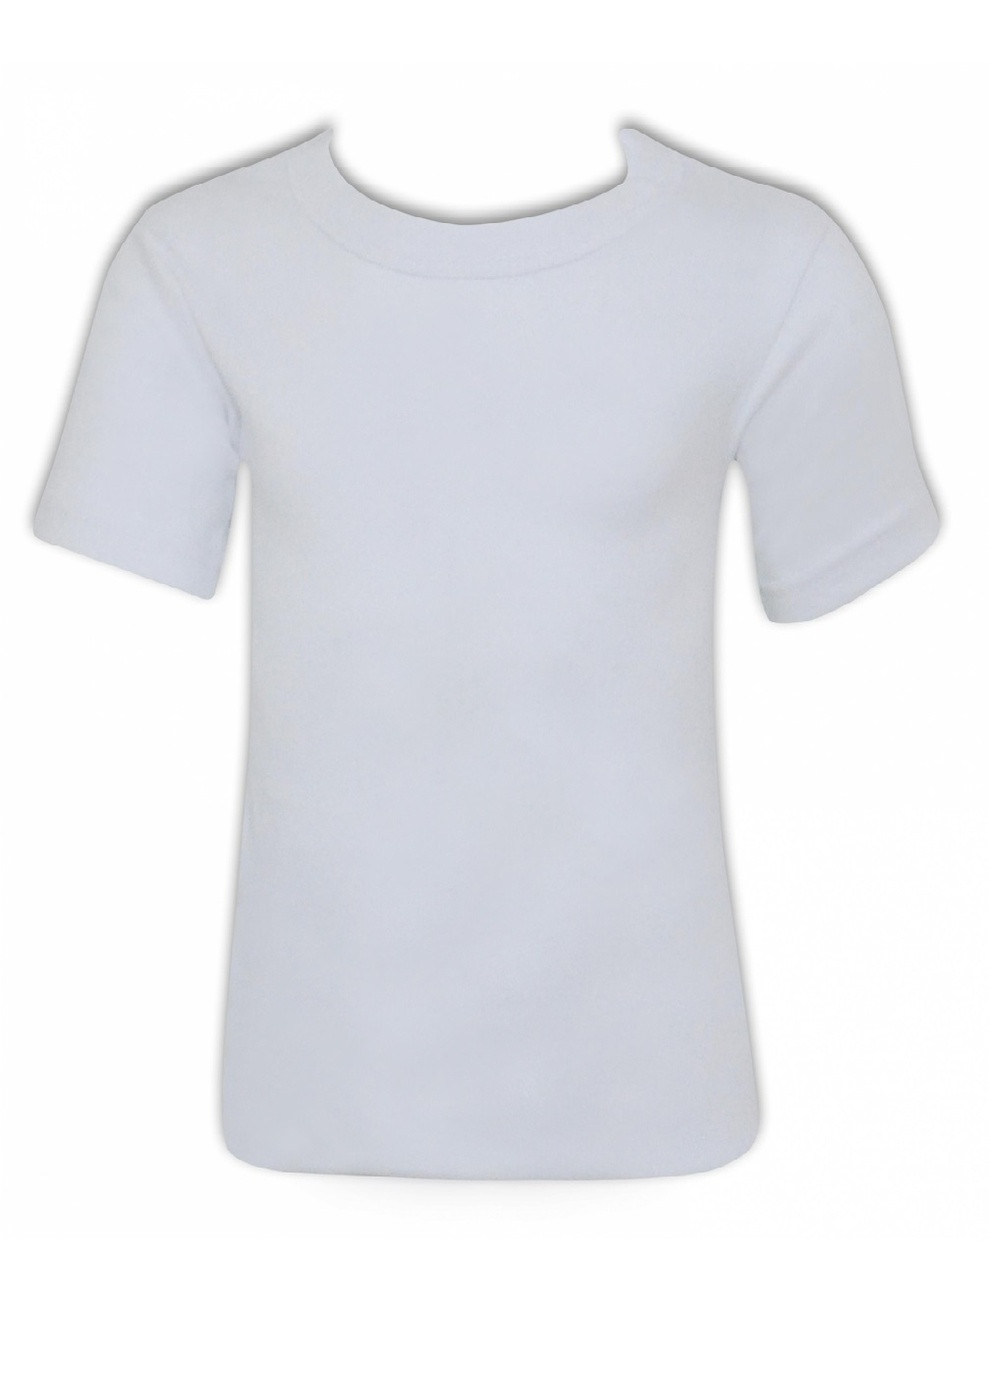 Біла демісезонна футболка для хлопчика (2шт),, р.7-8, white Katamino K12820